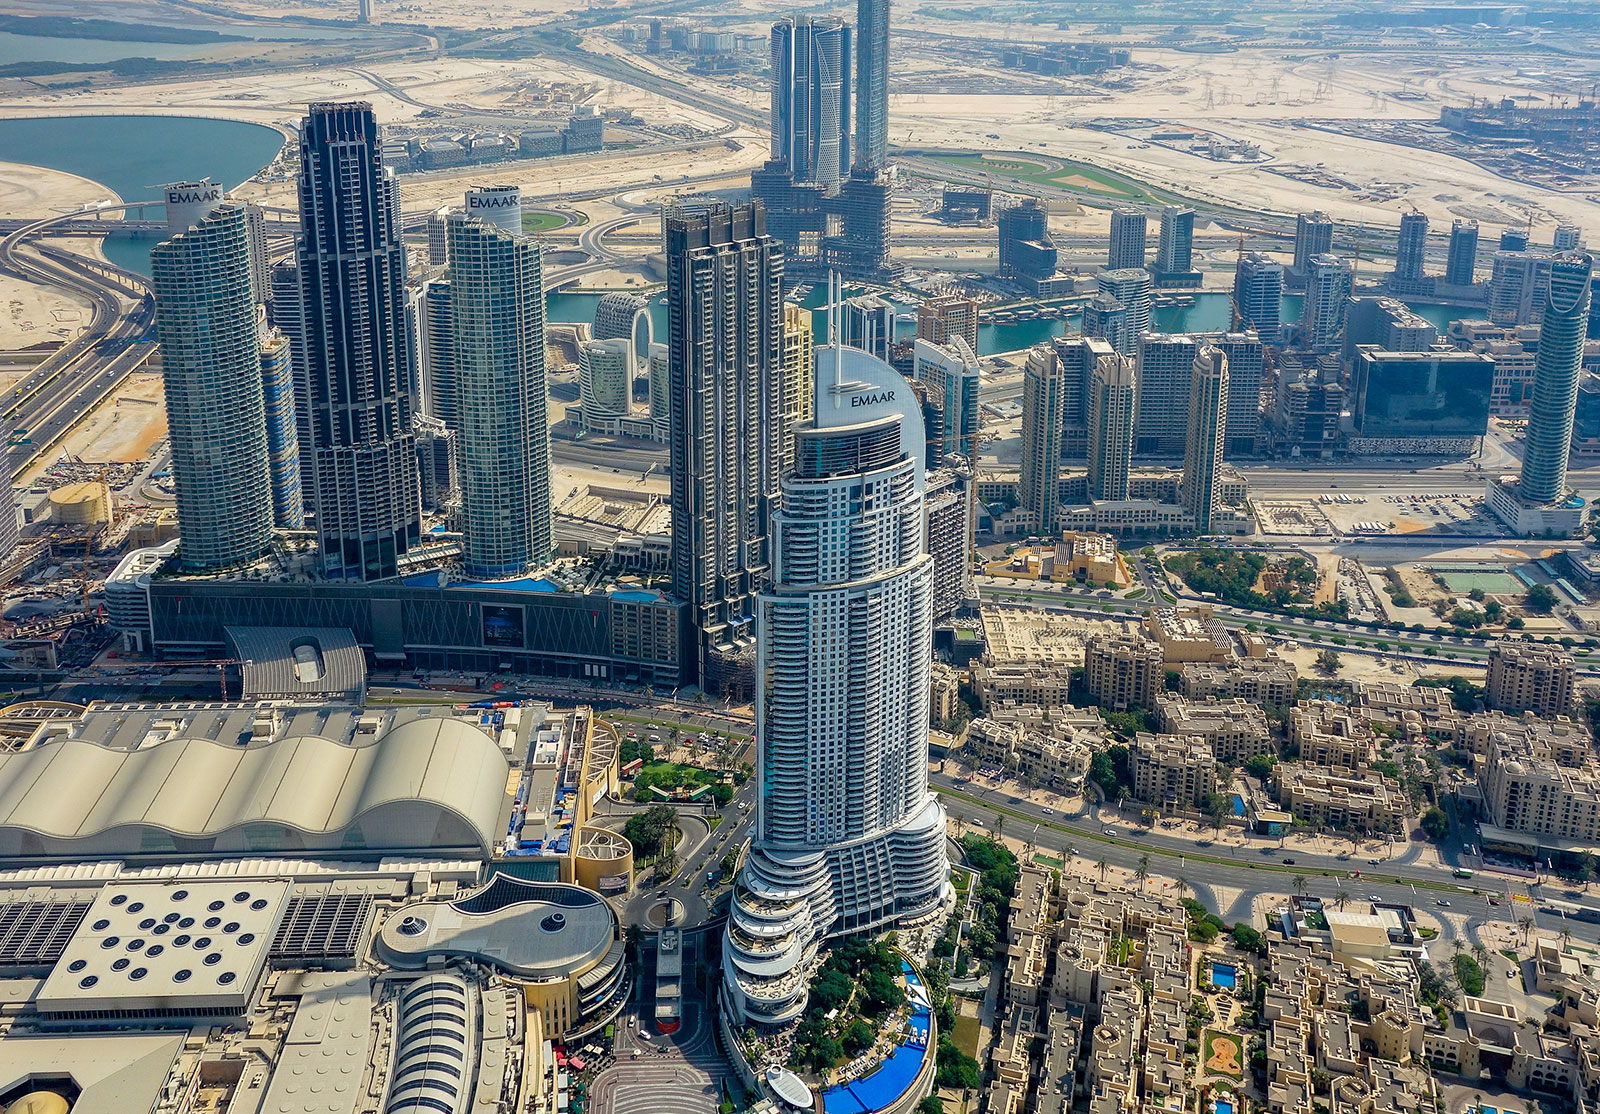 An aerial view of Dubai.